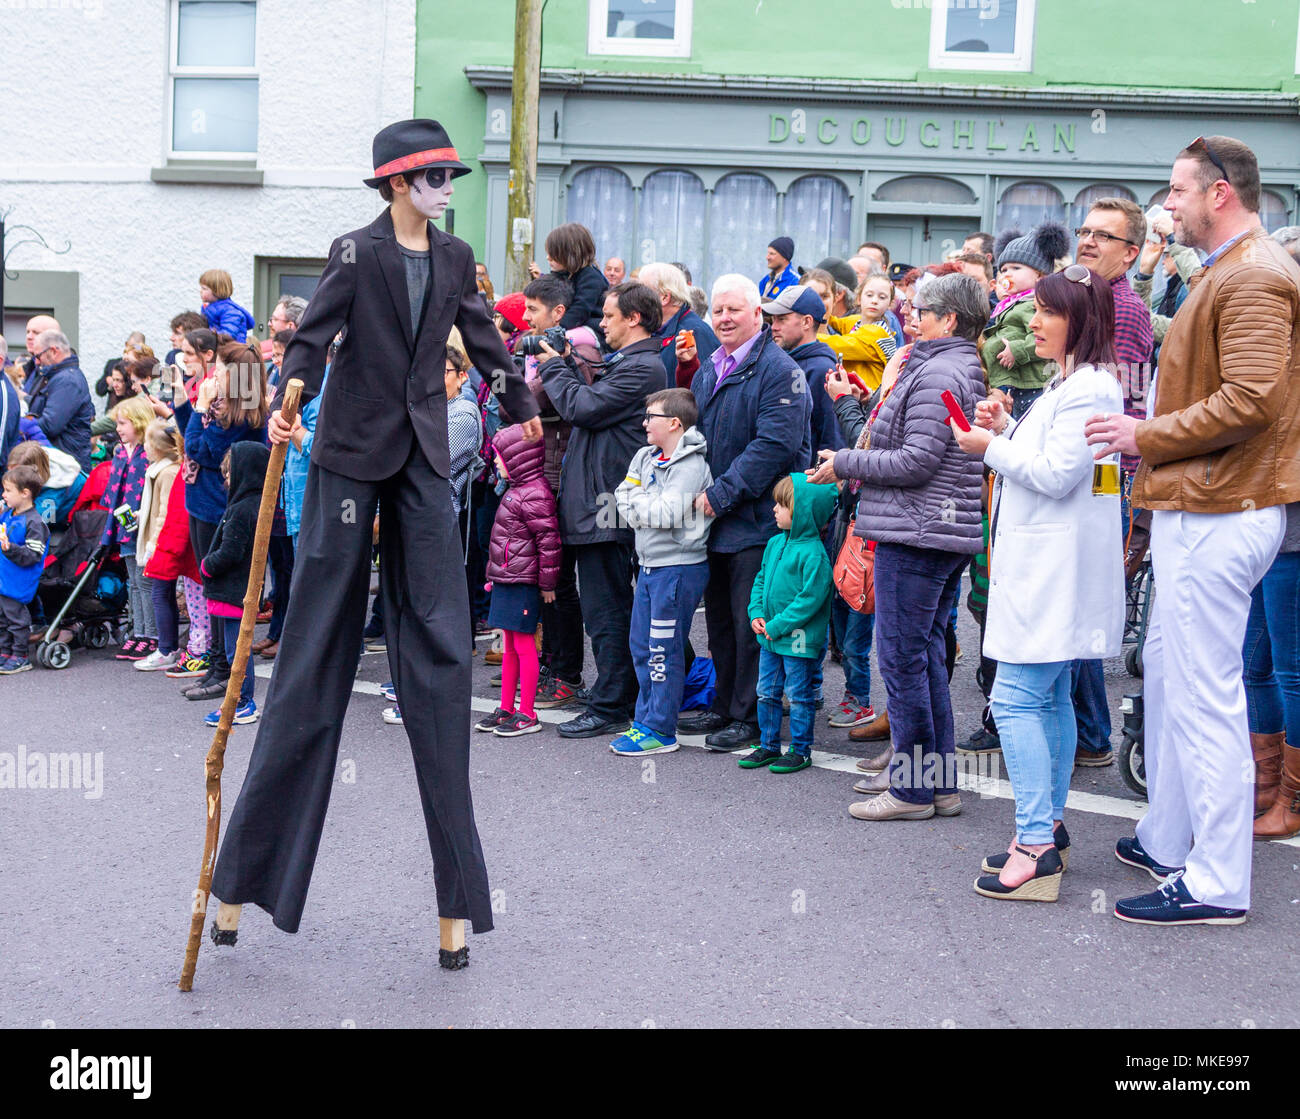 Artisti di strada prendendo parte ad un festival di jazz street processione, mostrando loro luminosi costumi e danze con la musica.Ballydehob, Irlanda. Foto Stock